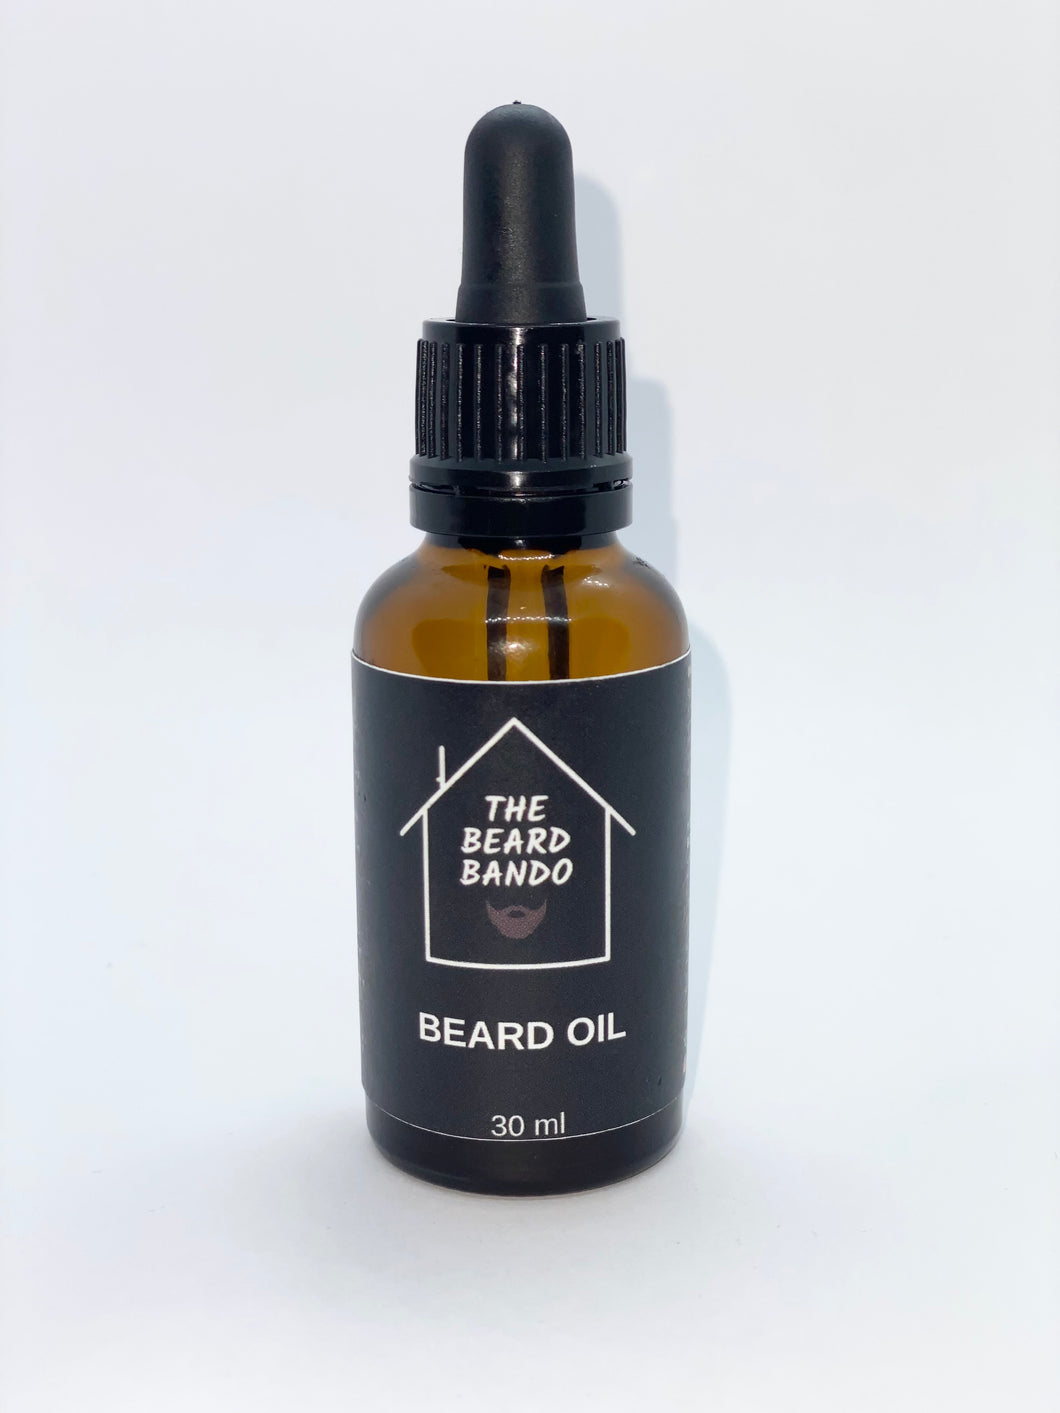 Bando Beard Oil #1 by The Beard Bando